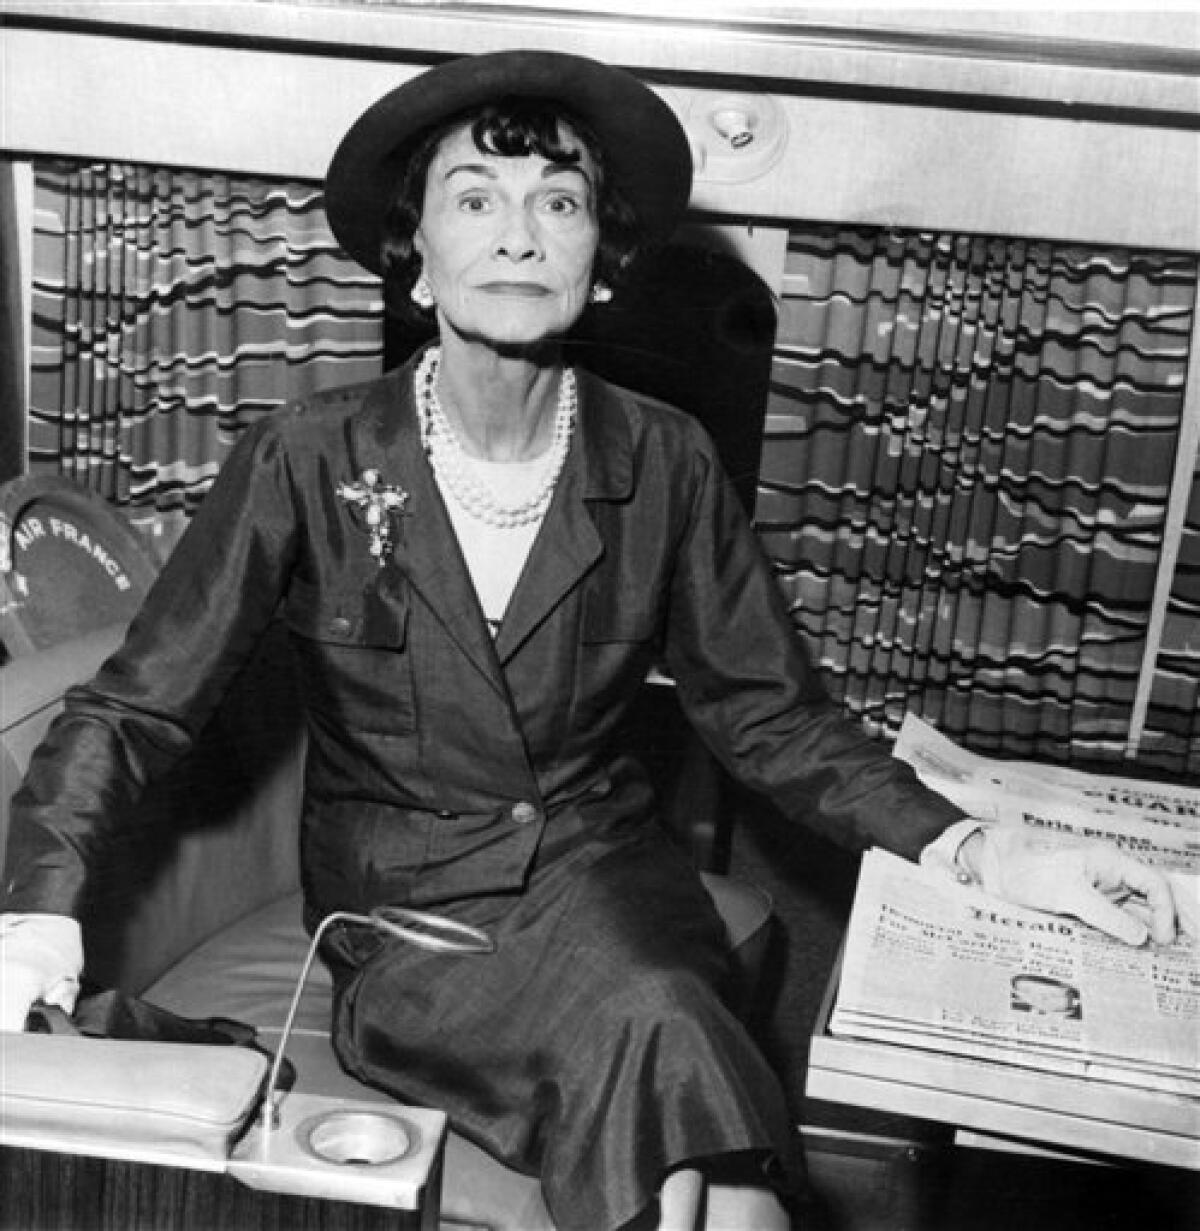 New book claims Coco Chanel was Nazi spy - The San Diego Union-Tribune